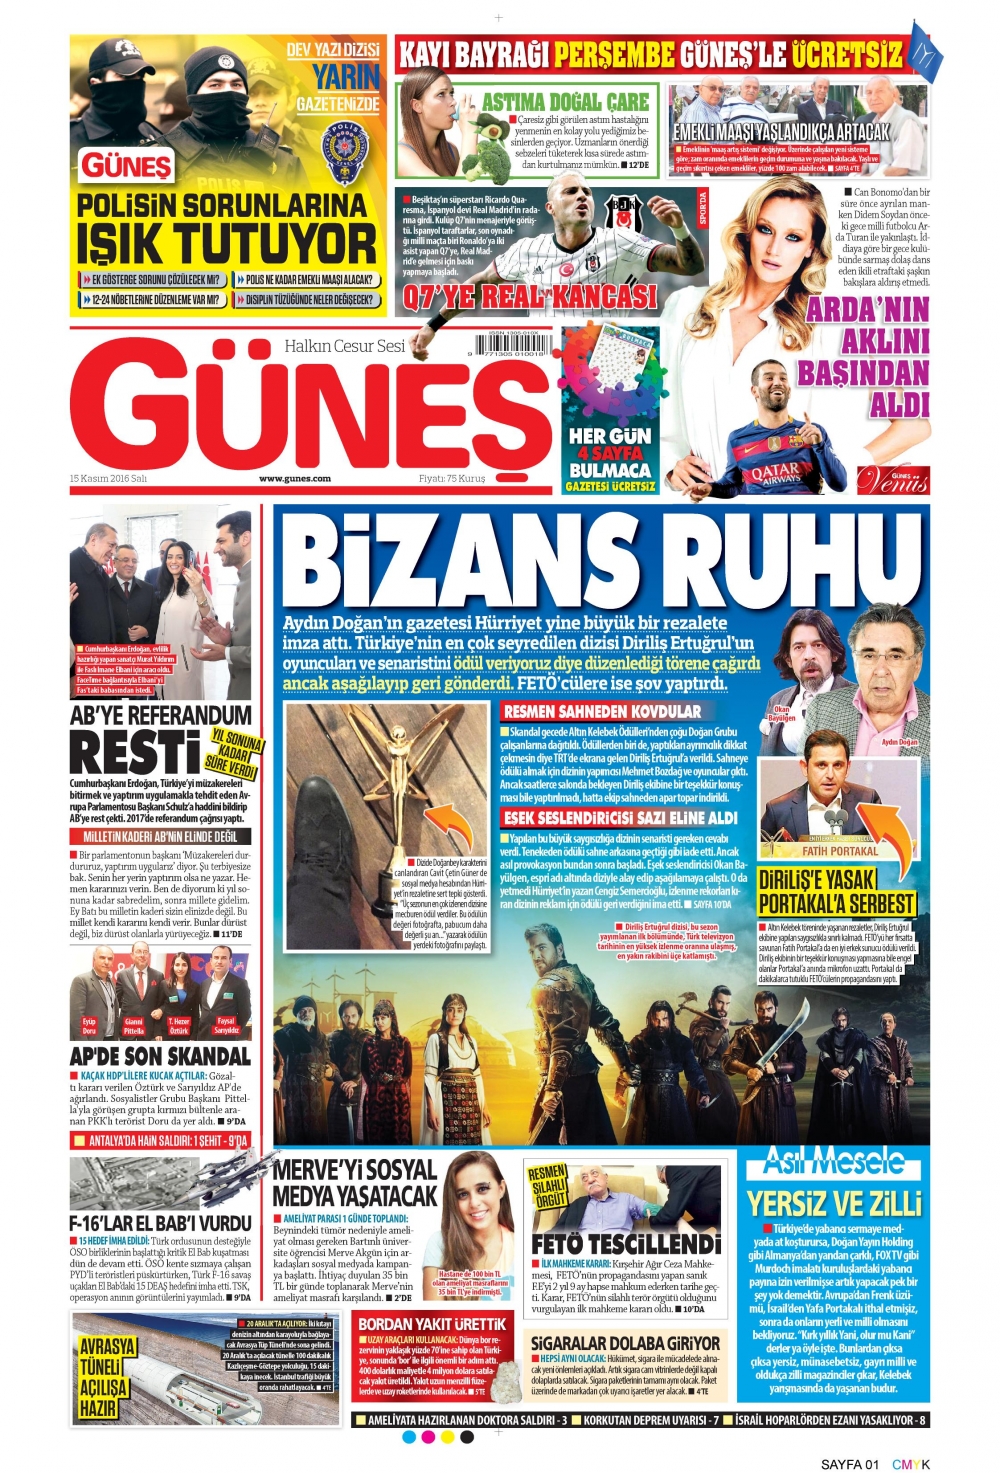 Güneş gazetesinin 15 Kasım 2016 tarihli nüshasının birinci sayfası